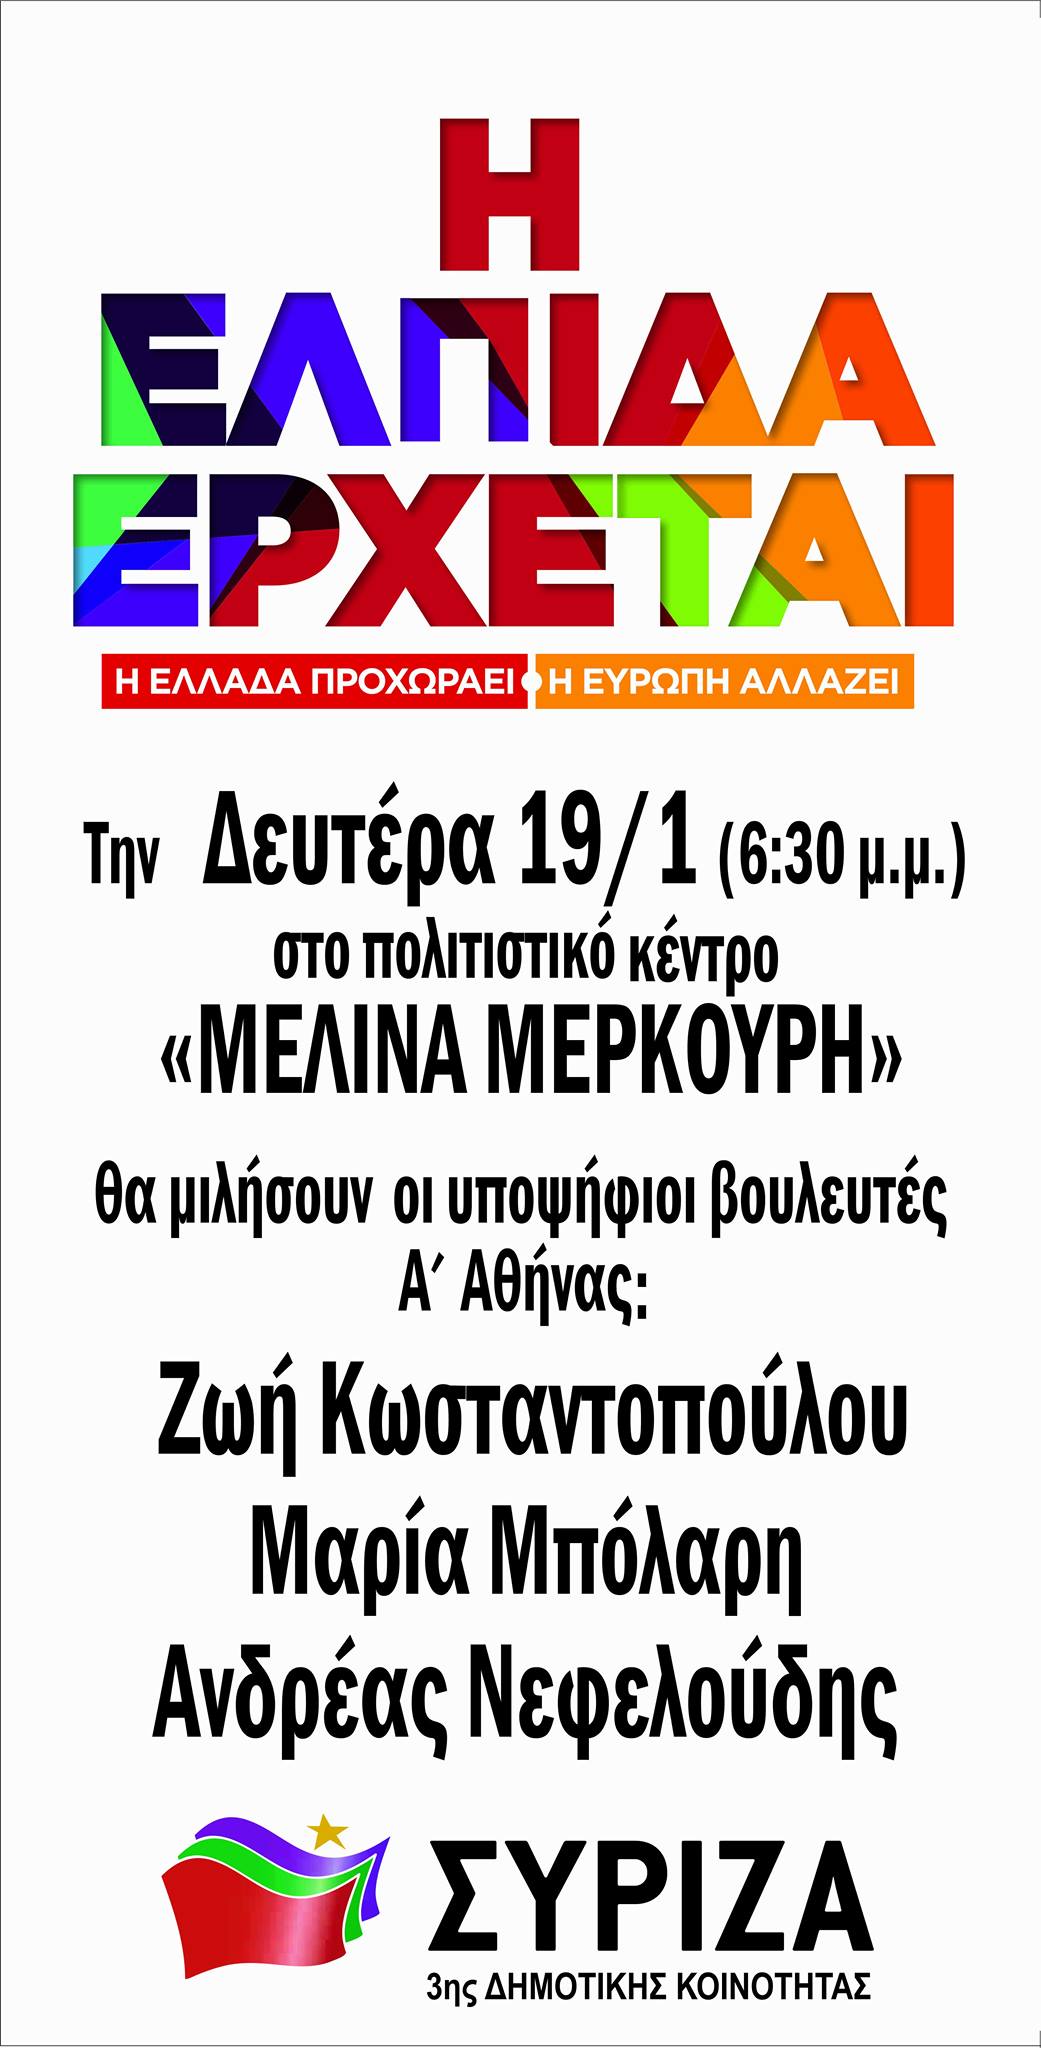 Εκδήλωση ΣΥΡΙΖΑ 3ης δημοτικής κοινότητας Δήμου Αθηναίων 